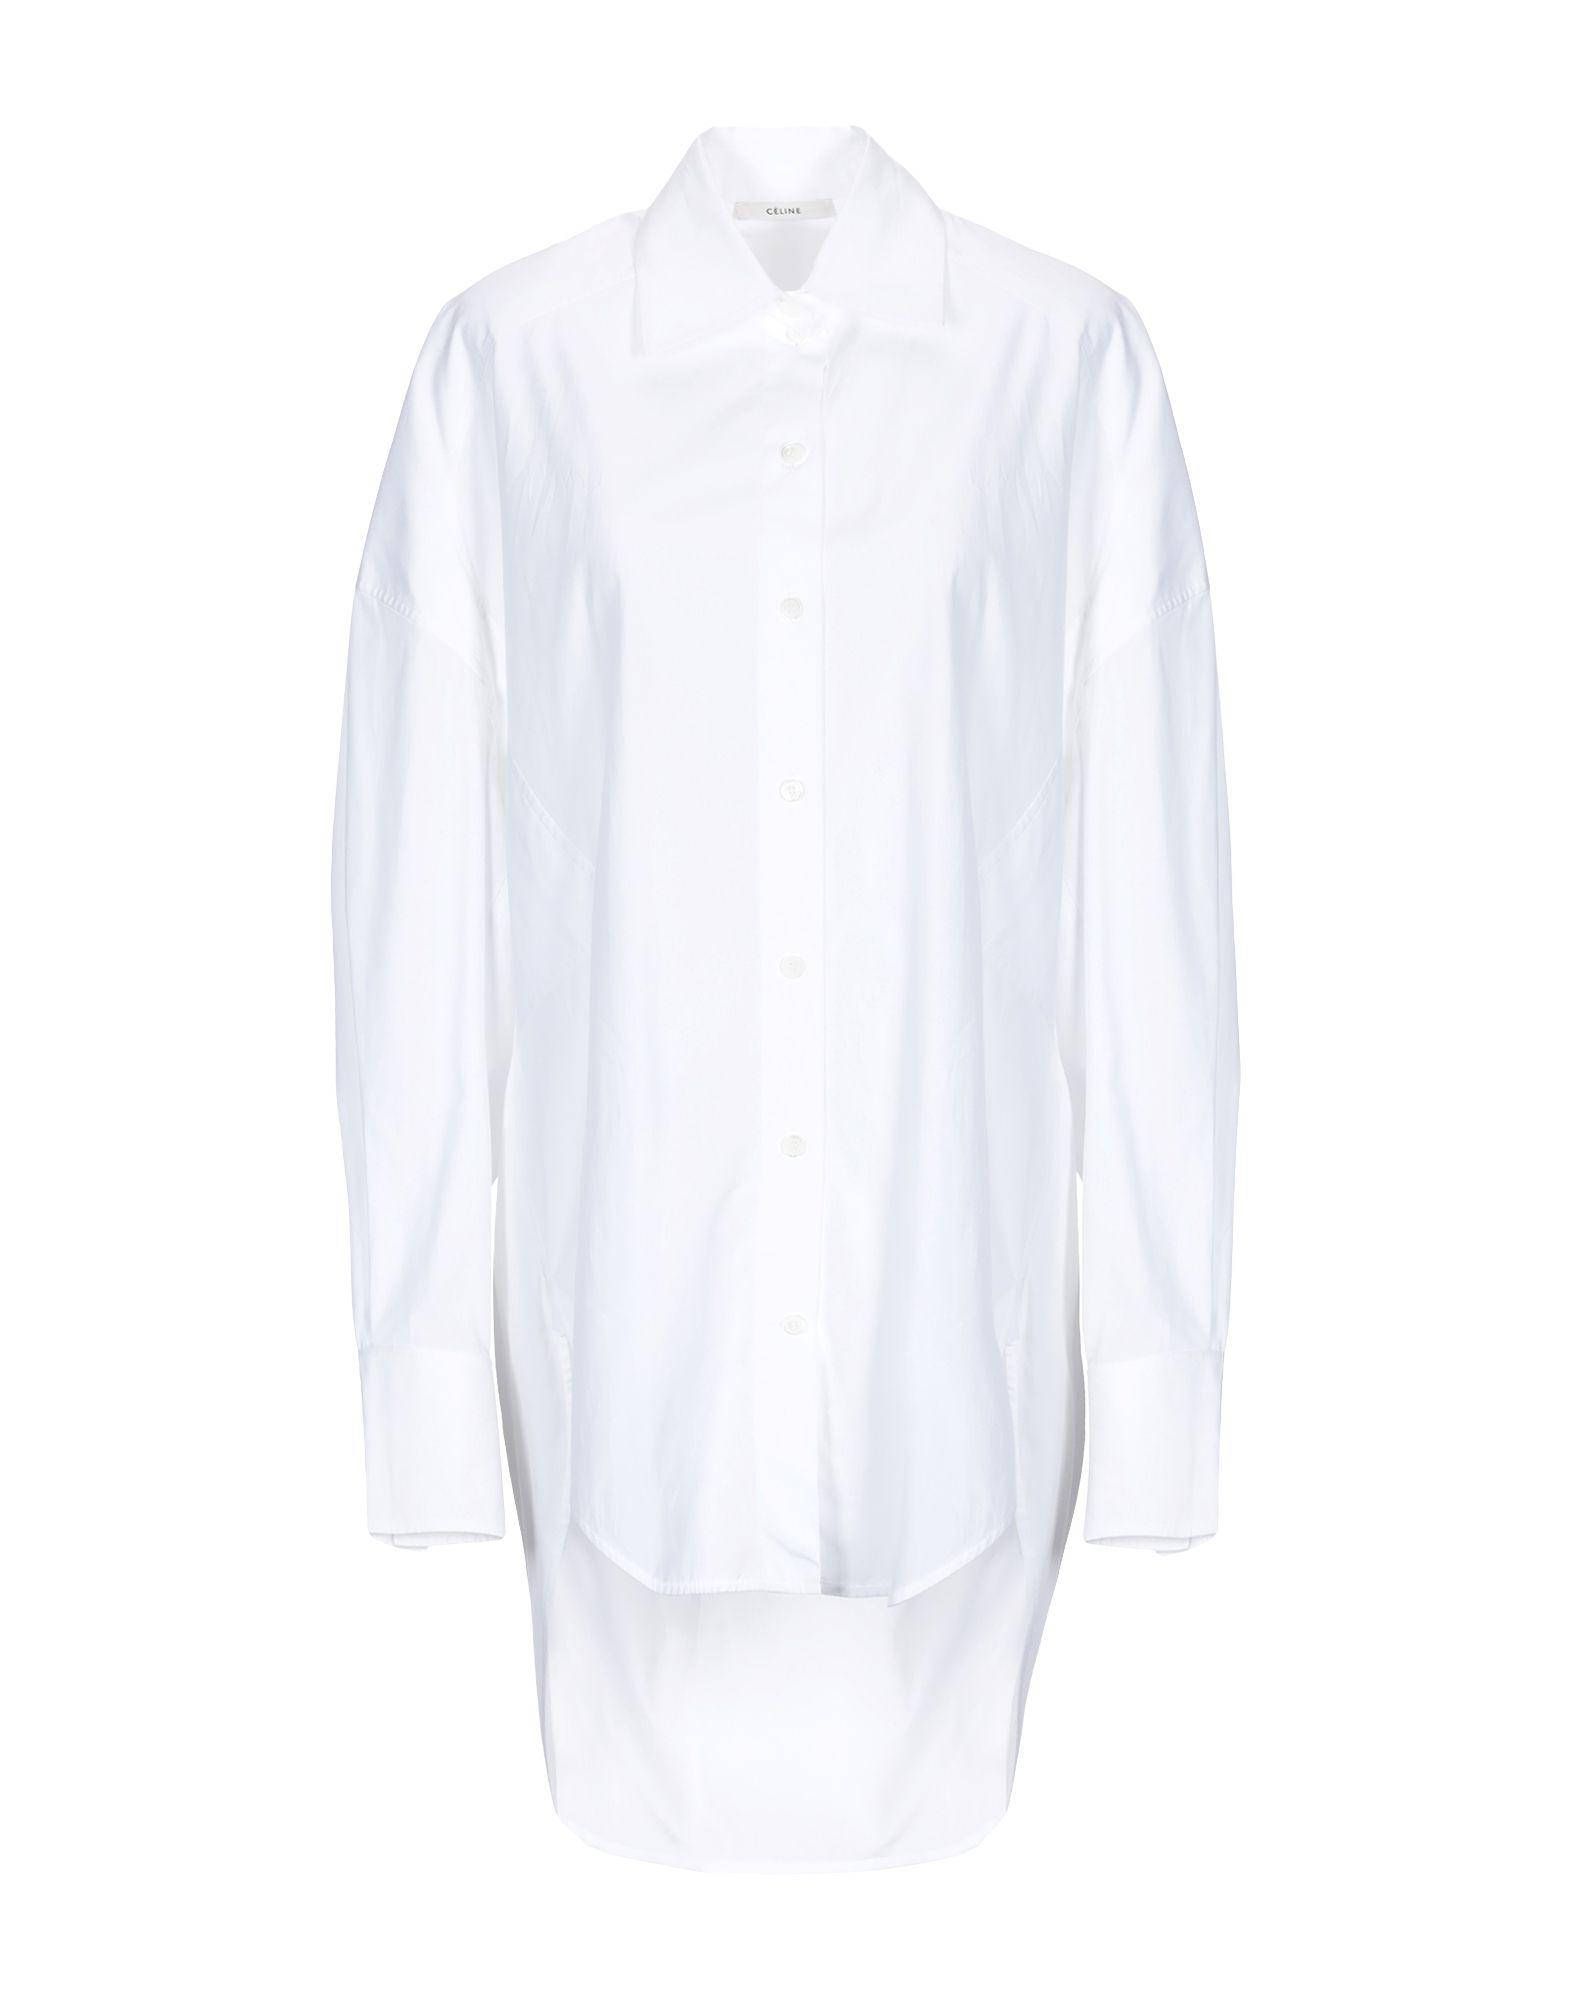 Céline Shirt in White - Lyst